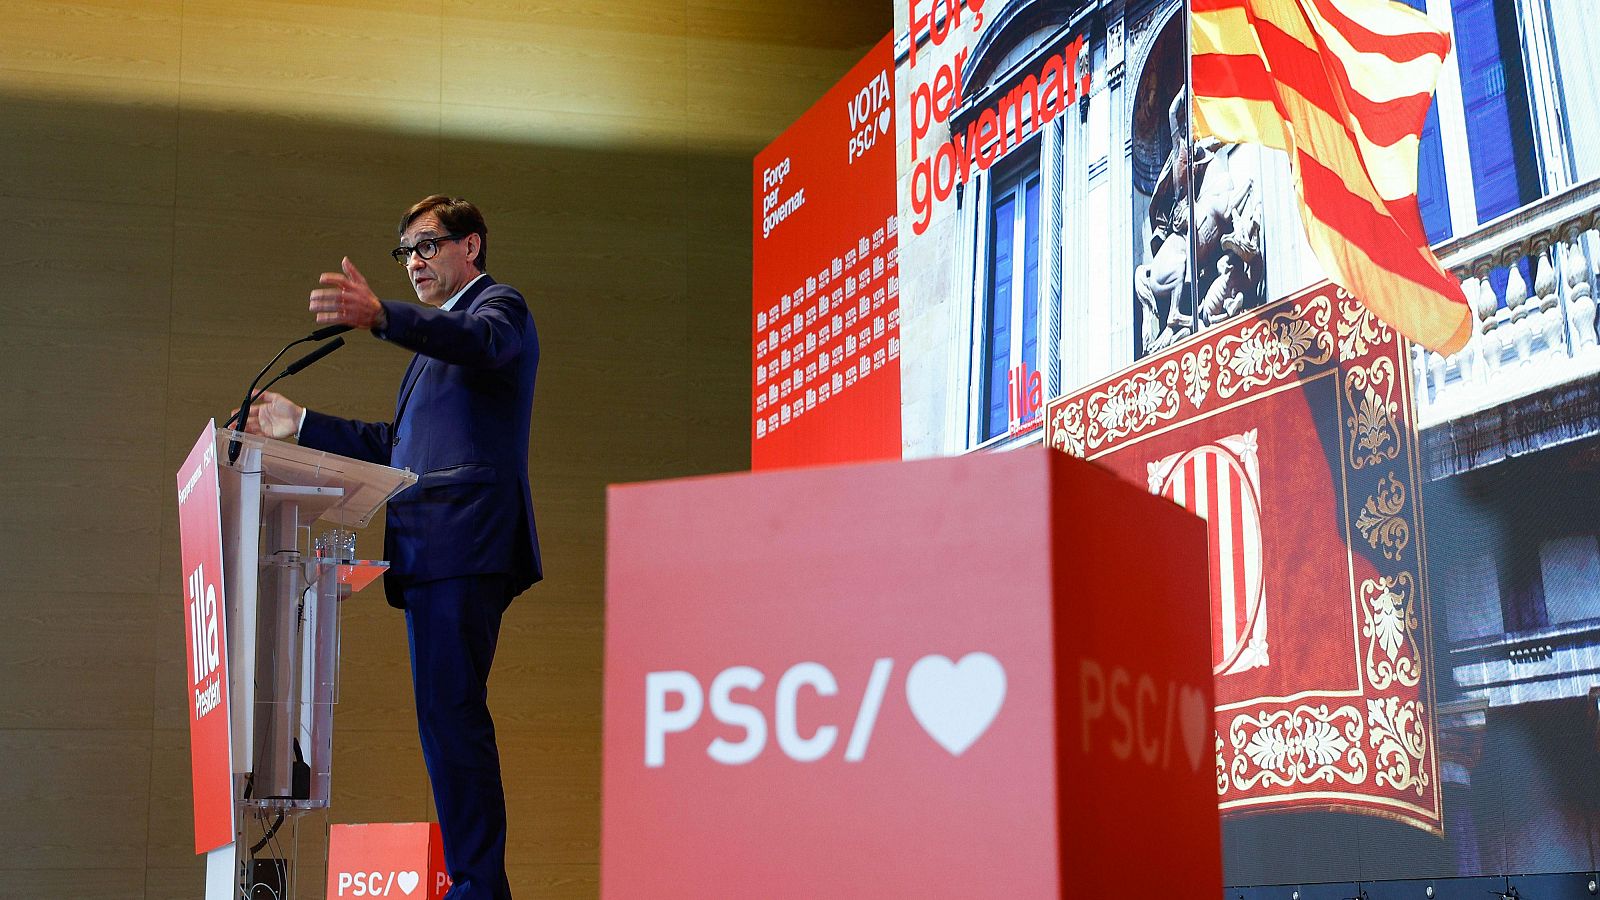 Elecciones catalanas: El PSC aspira a recuperar la Generalitat tras una “década perdida” de gobiernos independentistas